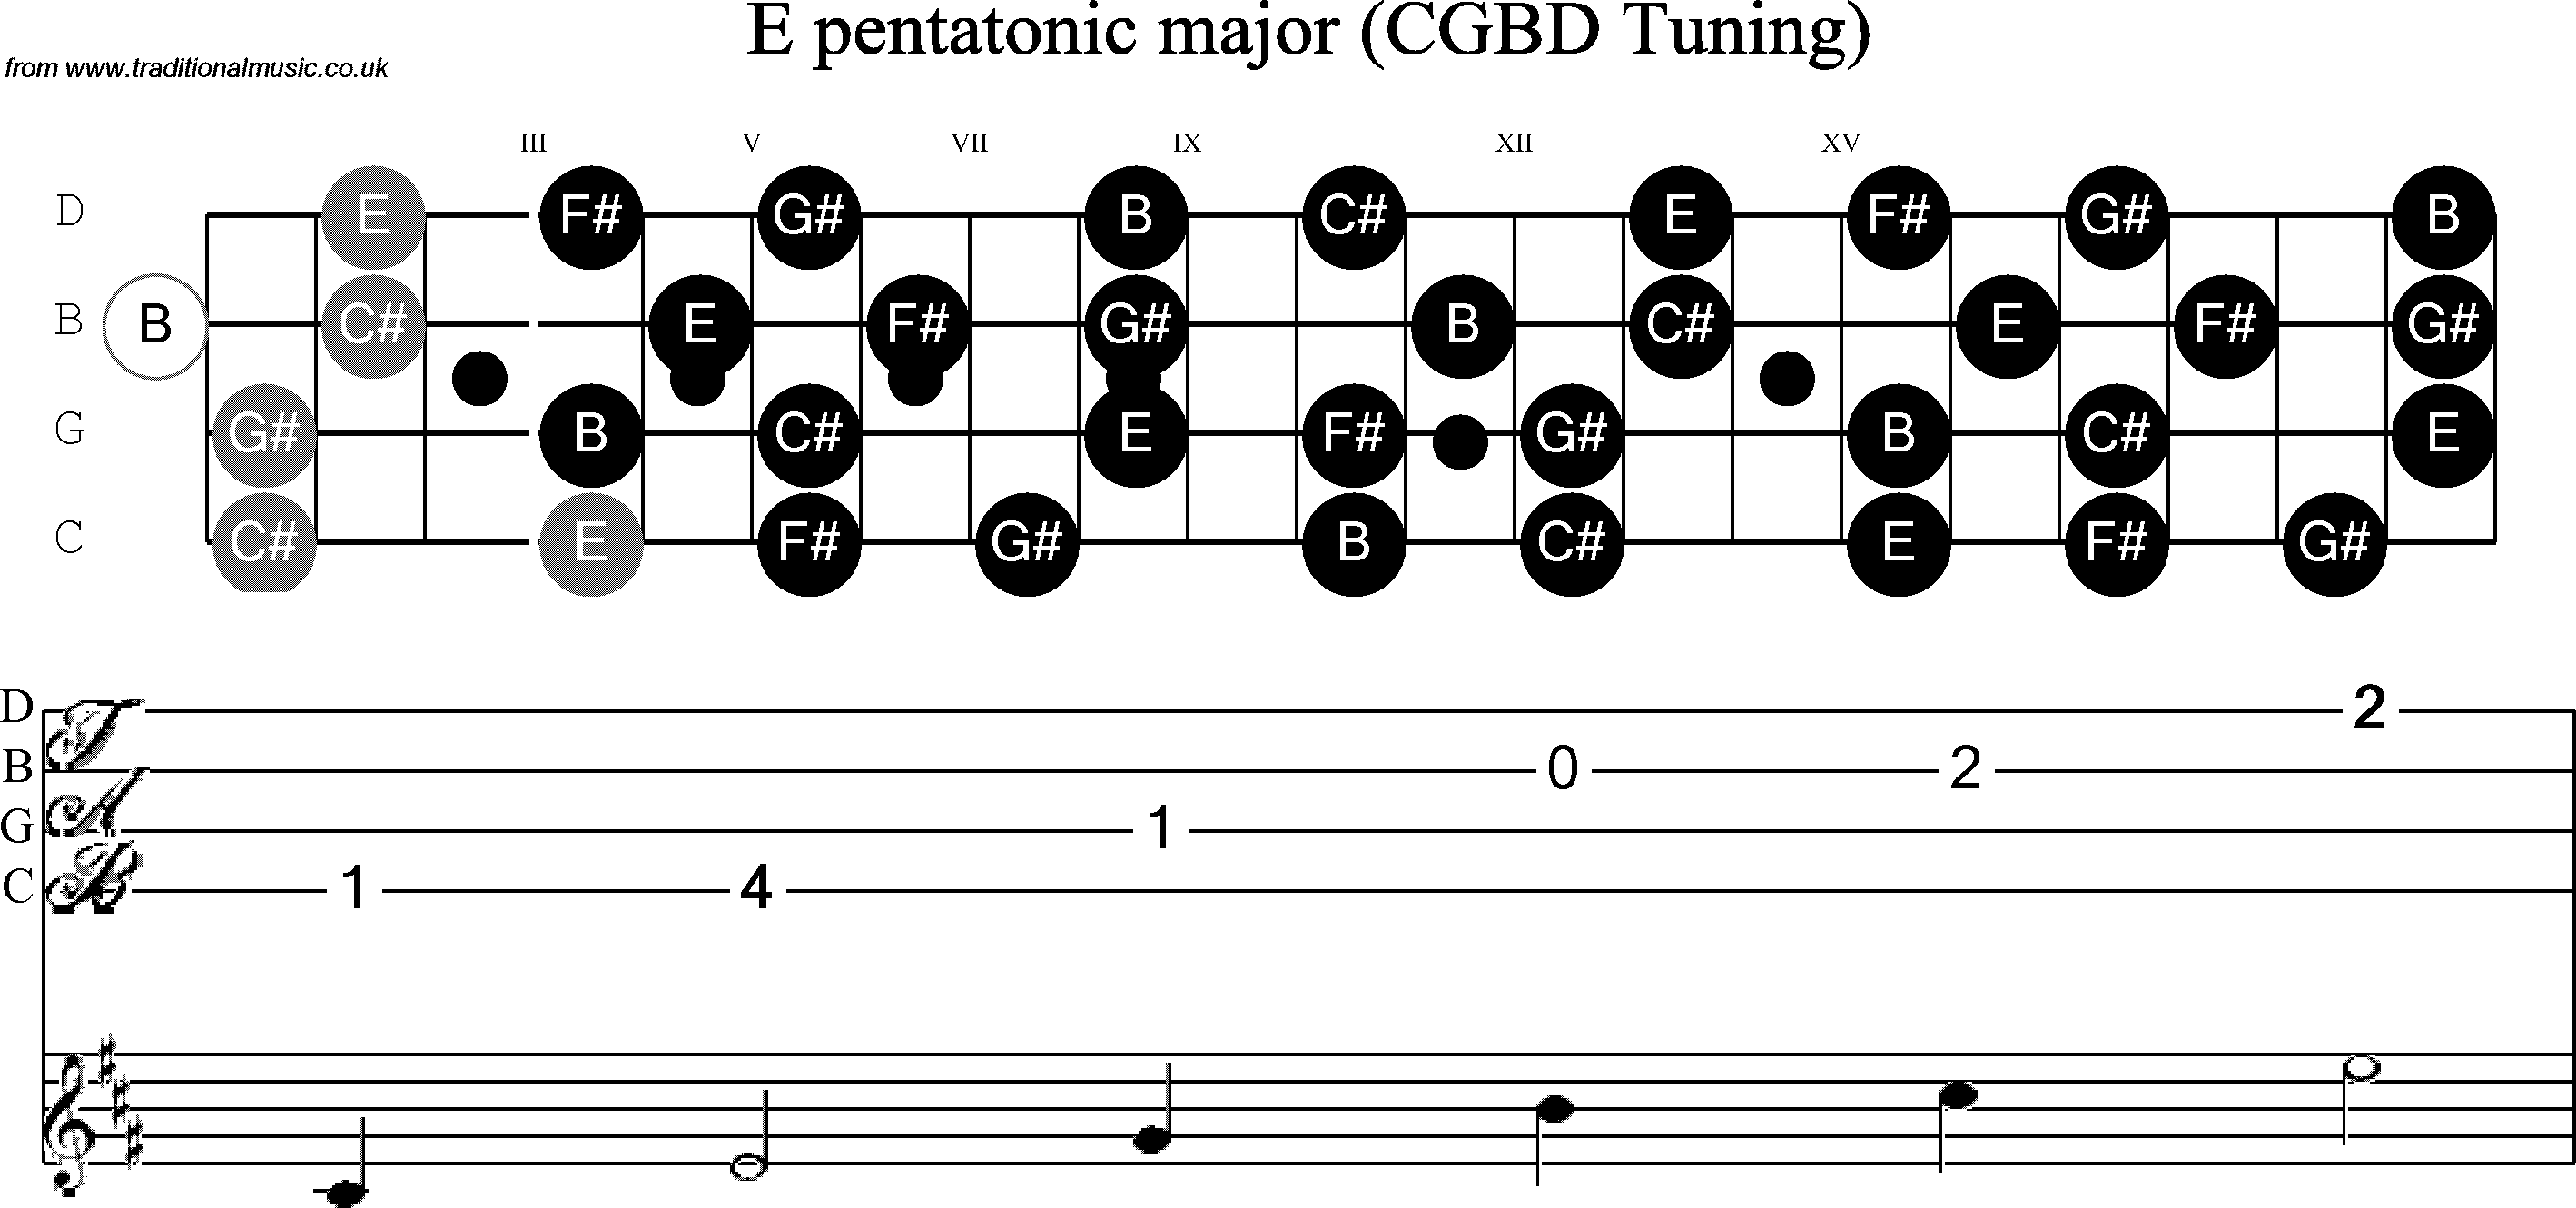 Scale, stave and neck diagram for Banjo(C / plectrunm tuned) E Pentatonic